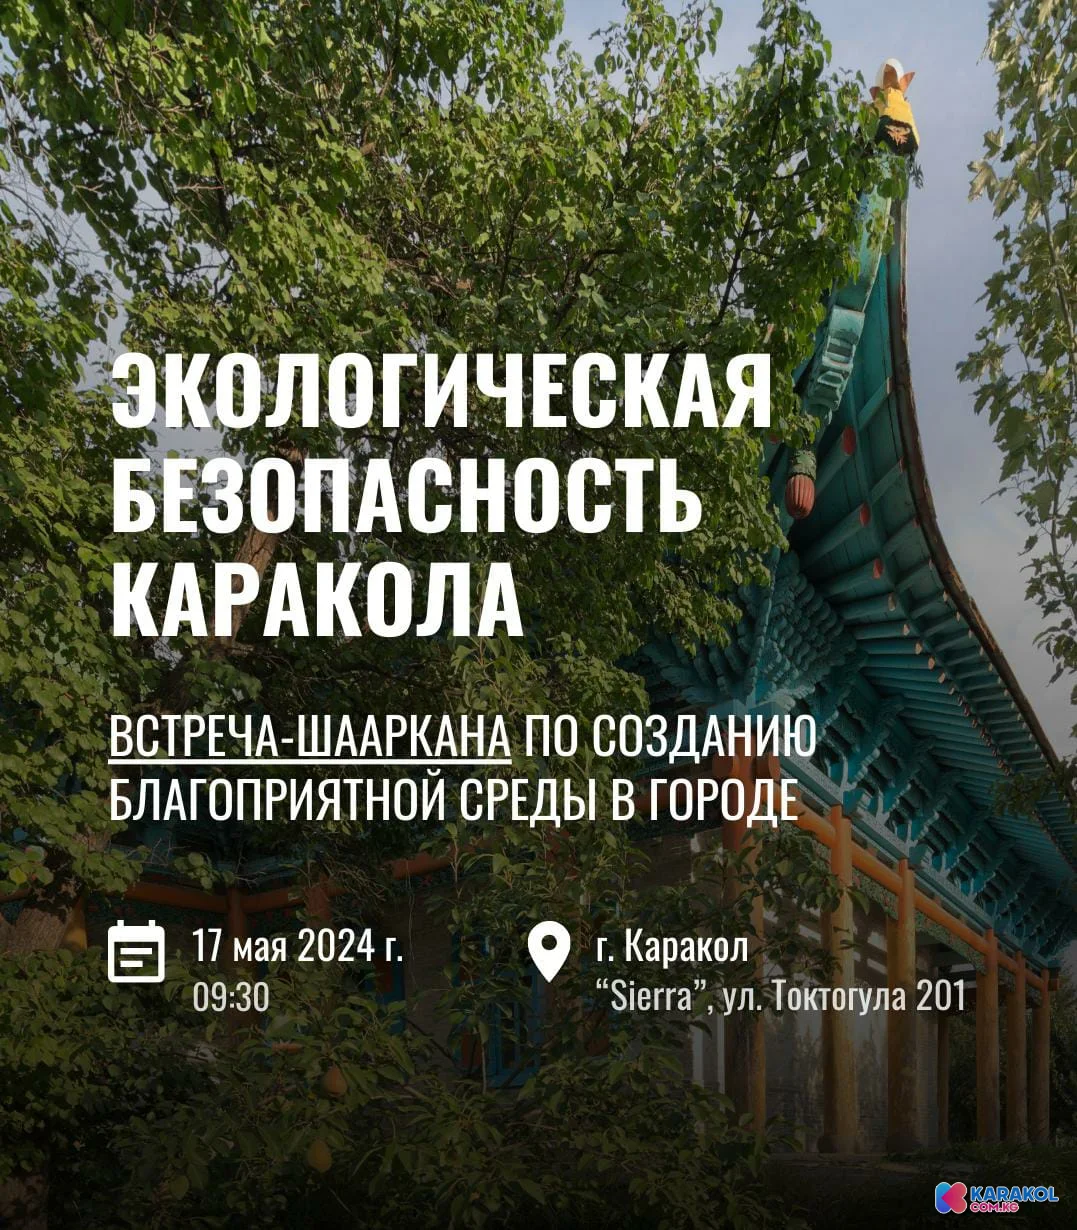 Приглашаем на встречу-шааркану по созданию благоприятной среды в городе Каракол "Экологическая безопасность Каракола"